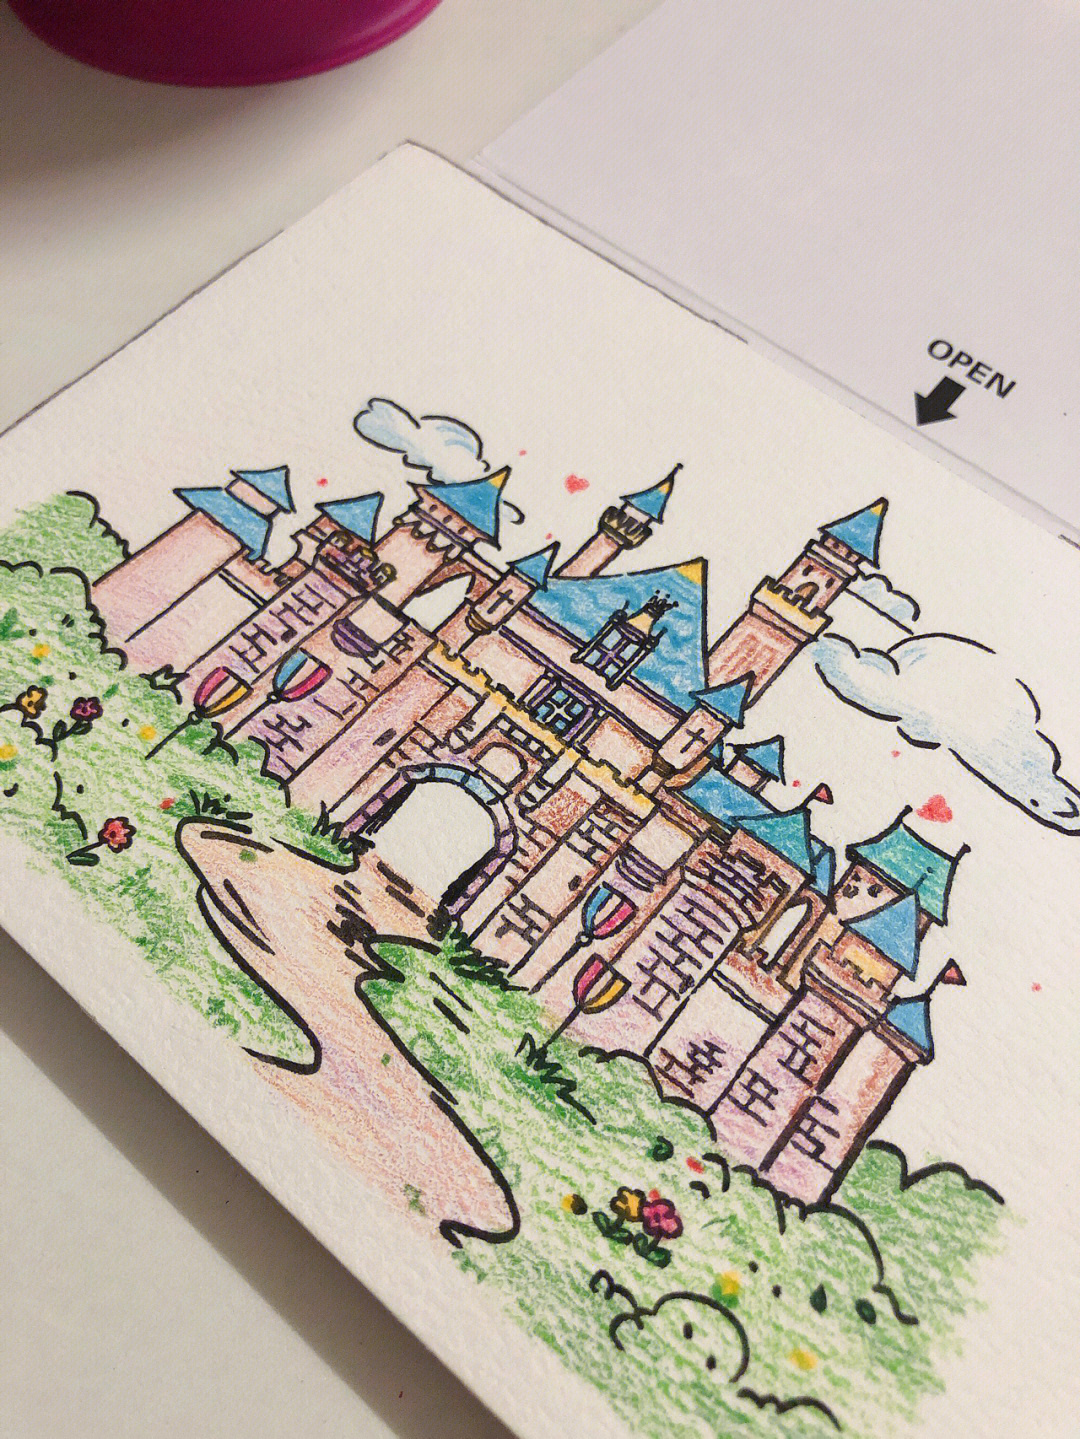 城堡彩铅画 简单图片